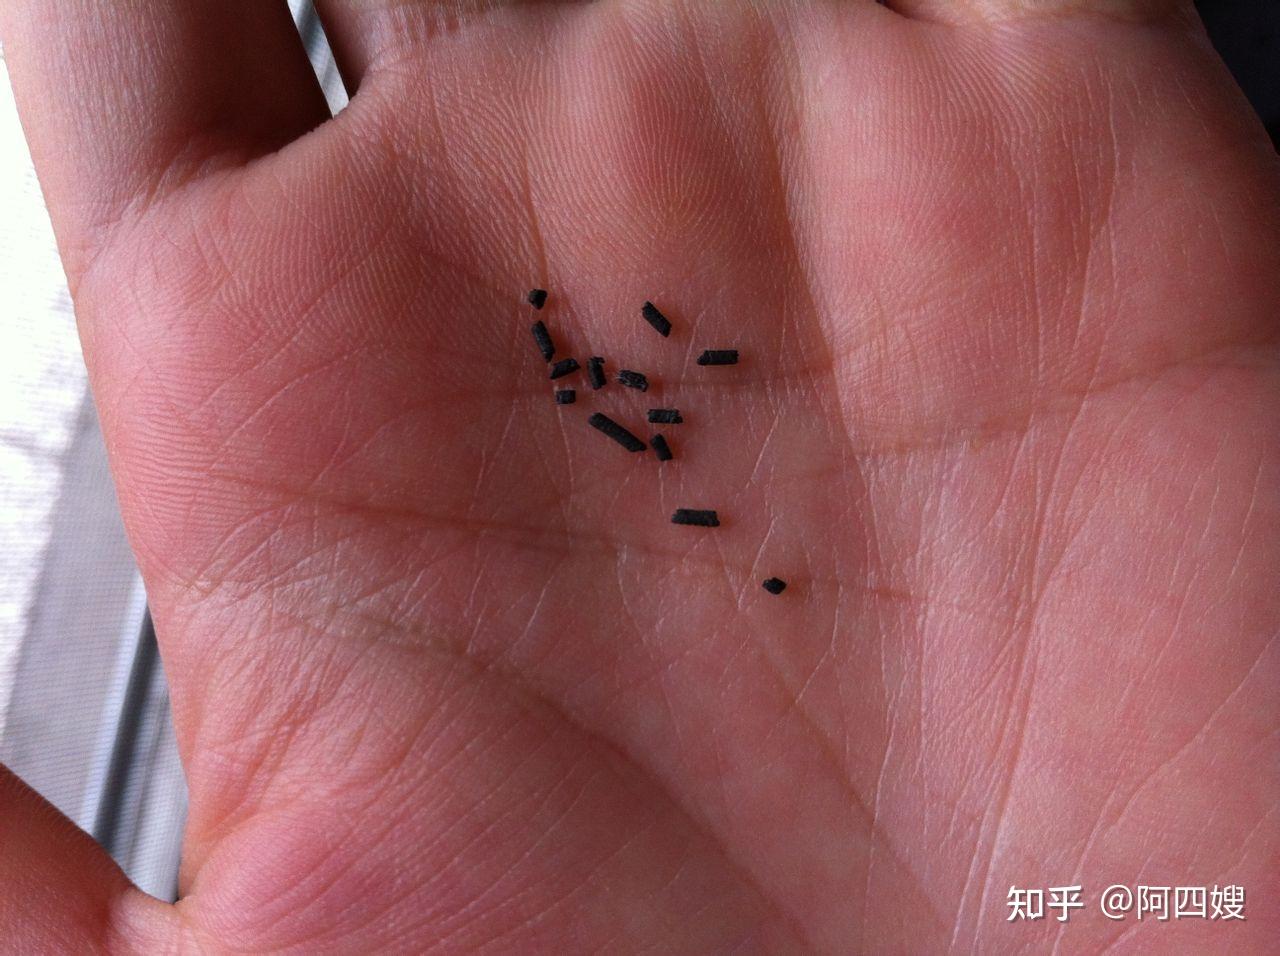 虫害防制人员教您认识蚊子的习性与分类-搜狐